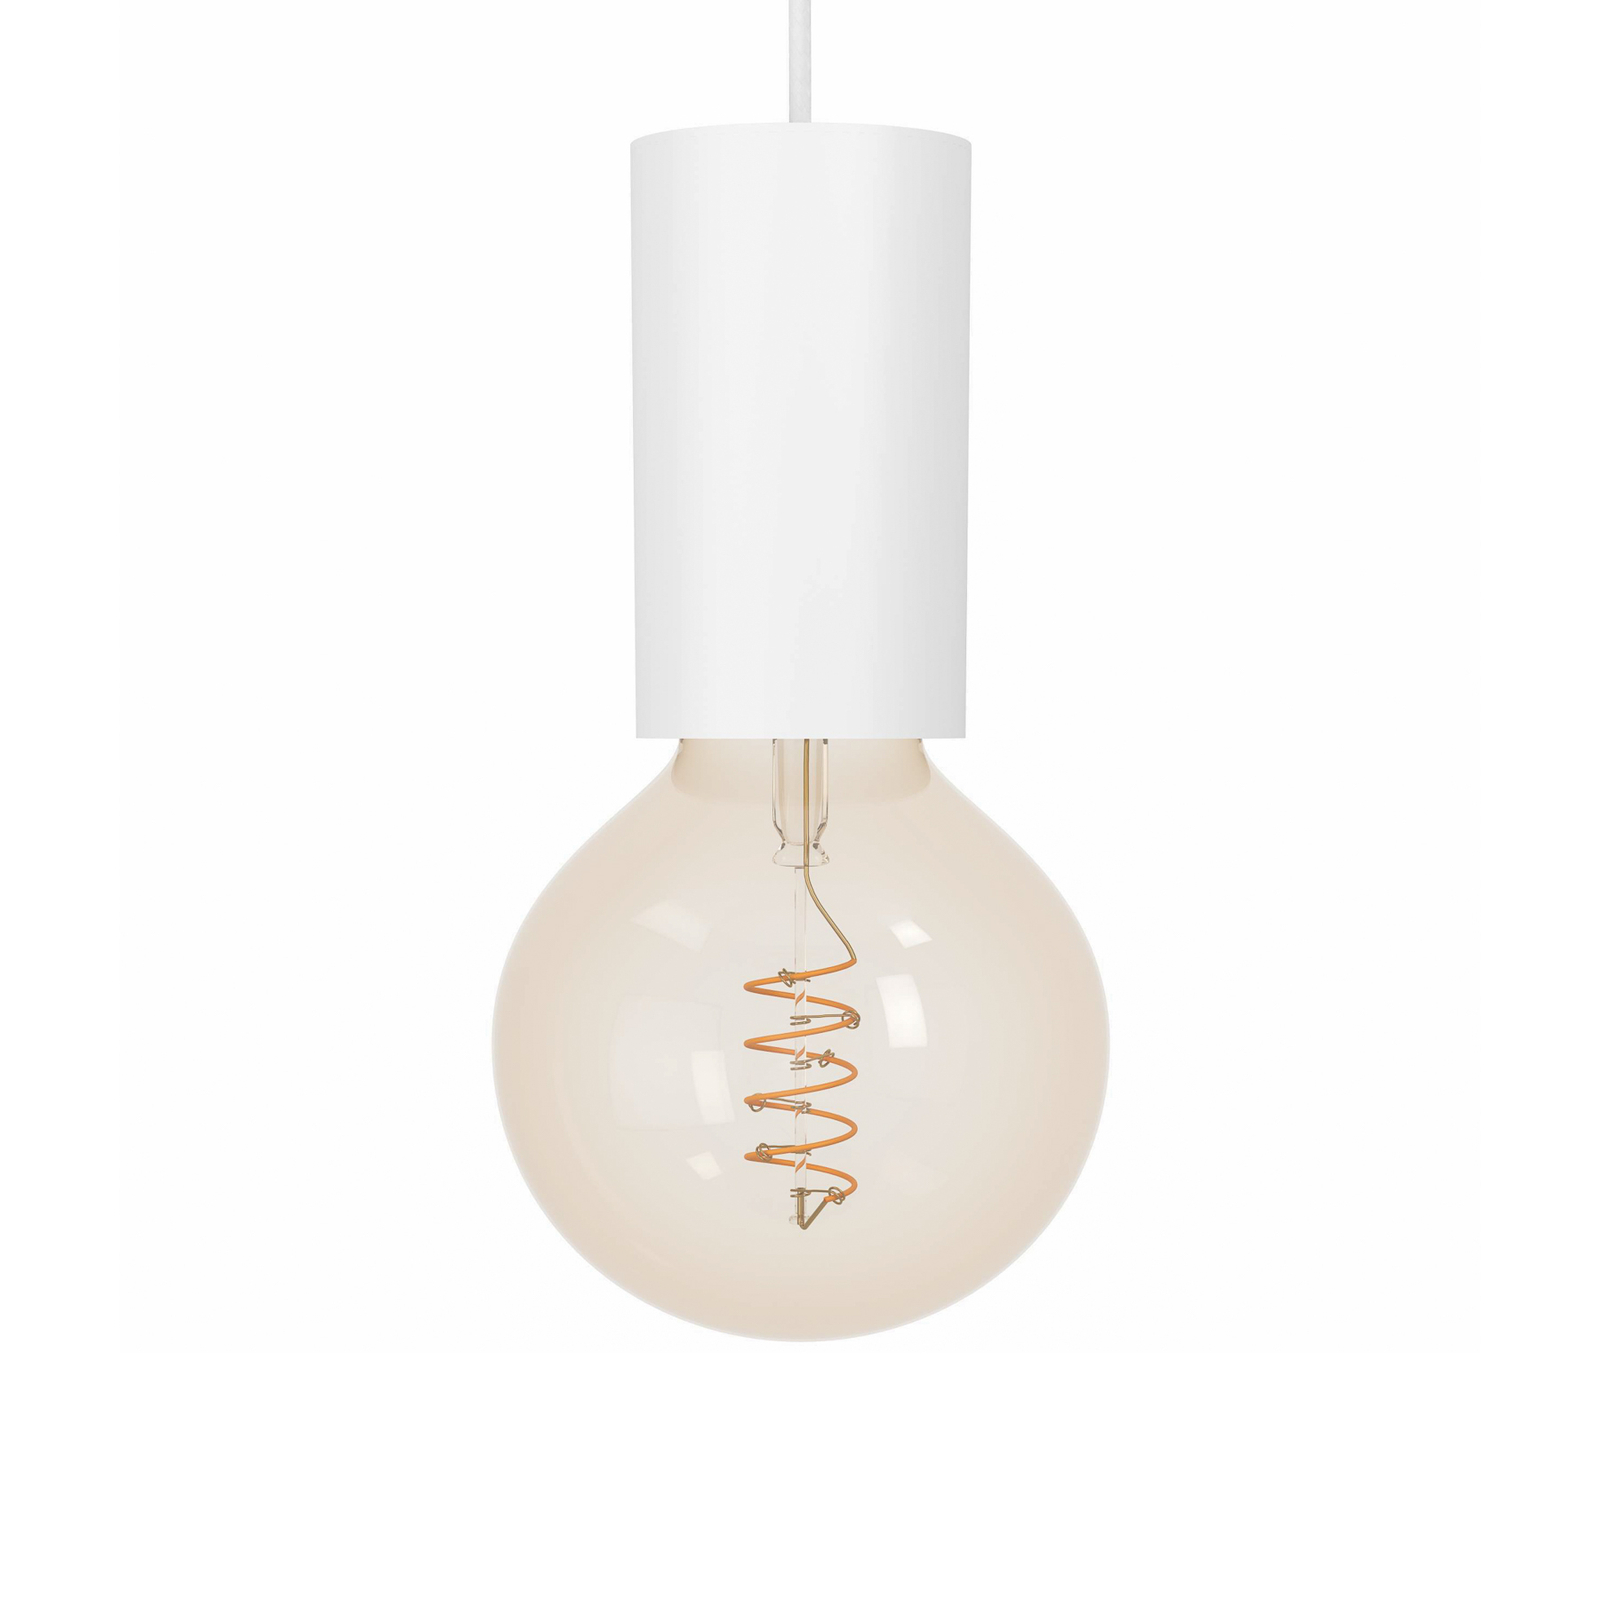 Pozueta 1 pendant light, 1-bulb, white